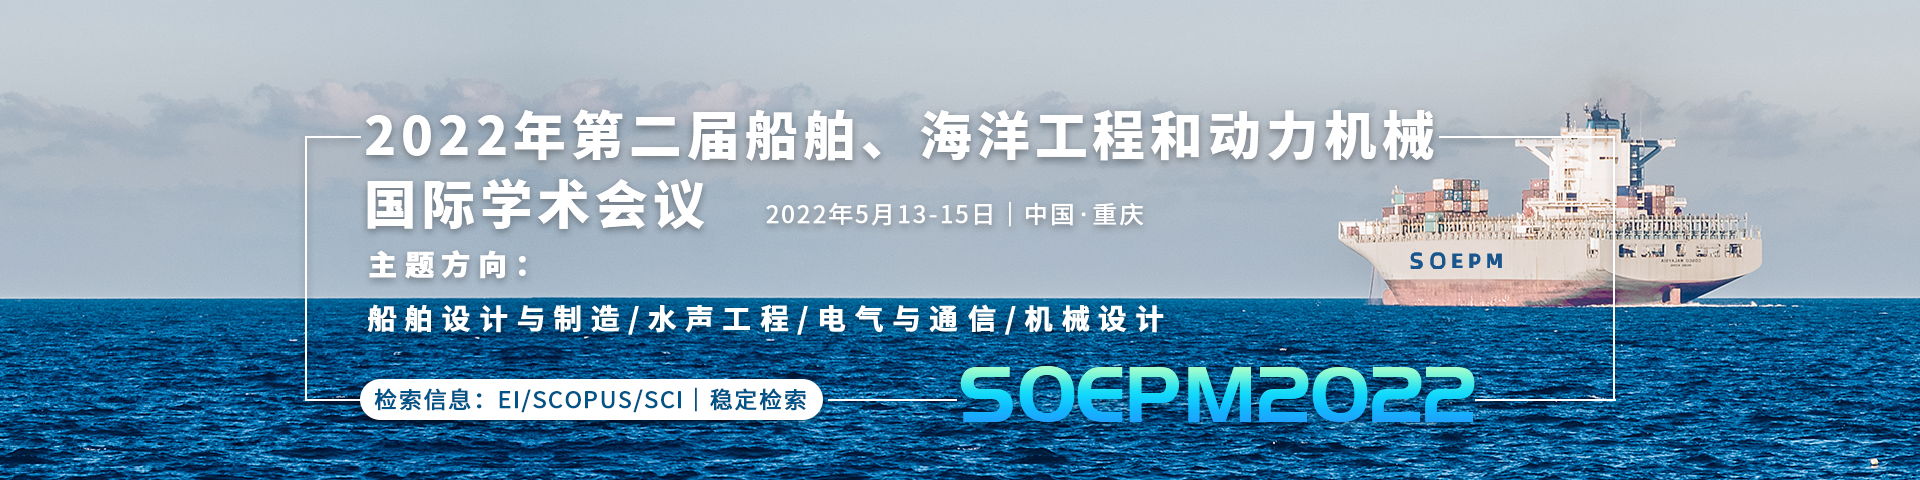 5月重庆SOEPM2022会议艾思banner-何雪仪-20210219.png